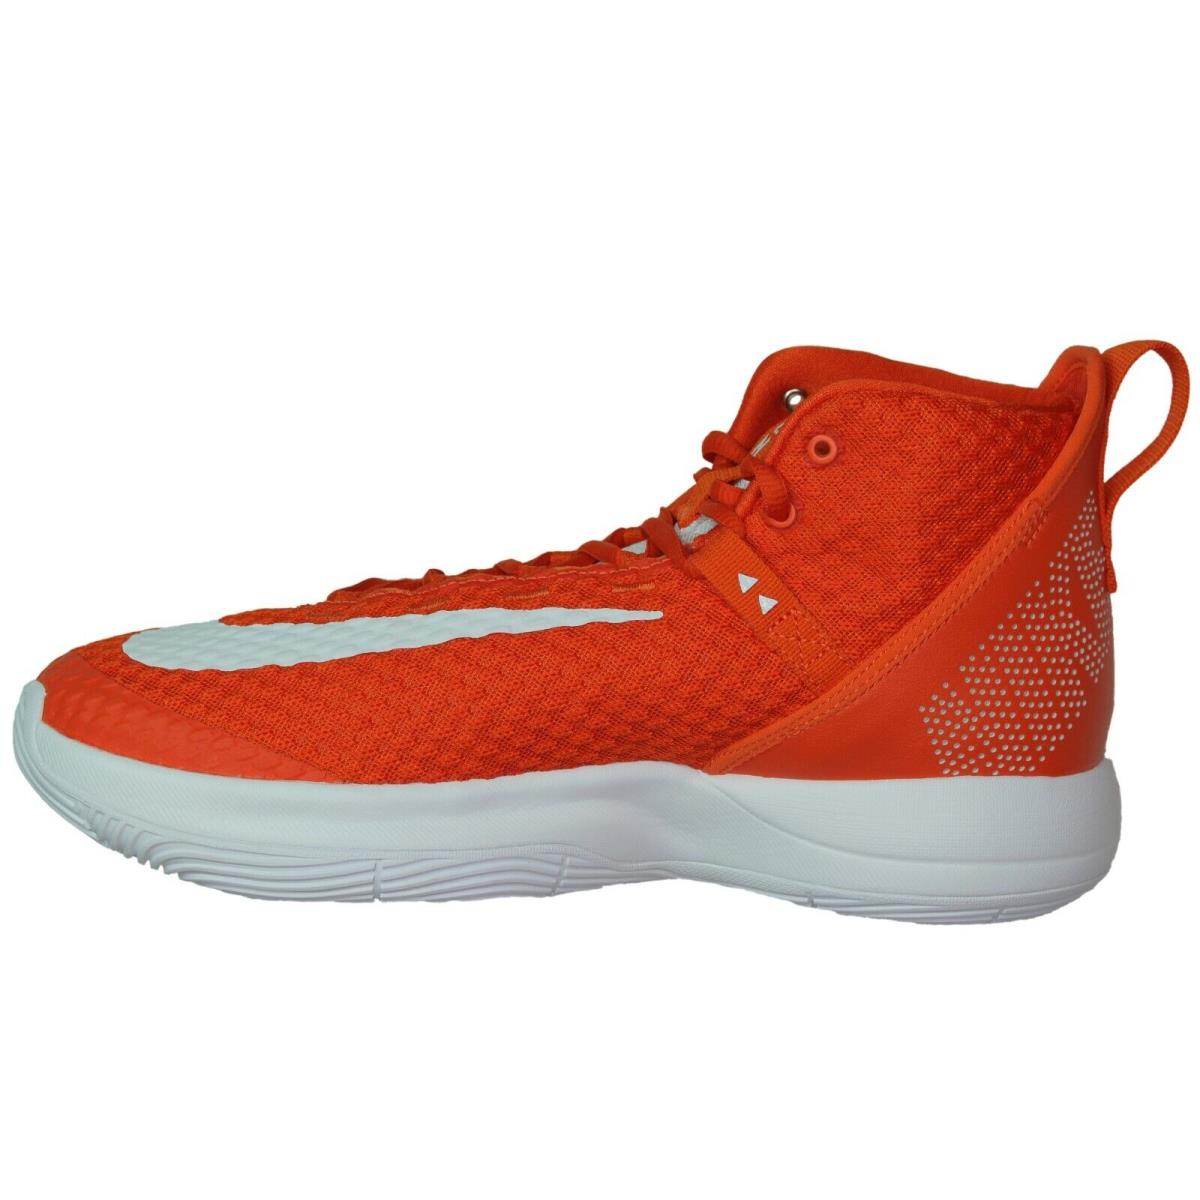 Nike Zoom Rize TB Promo Team Men Size 10.5 to 13.0 Team Orange Basketball